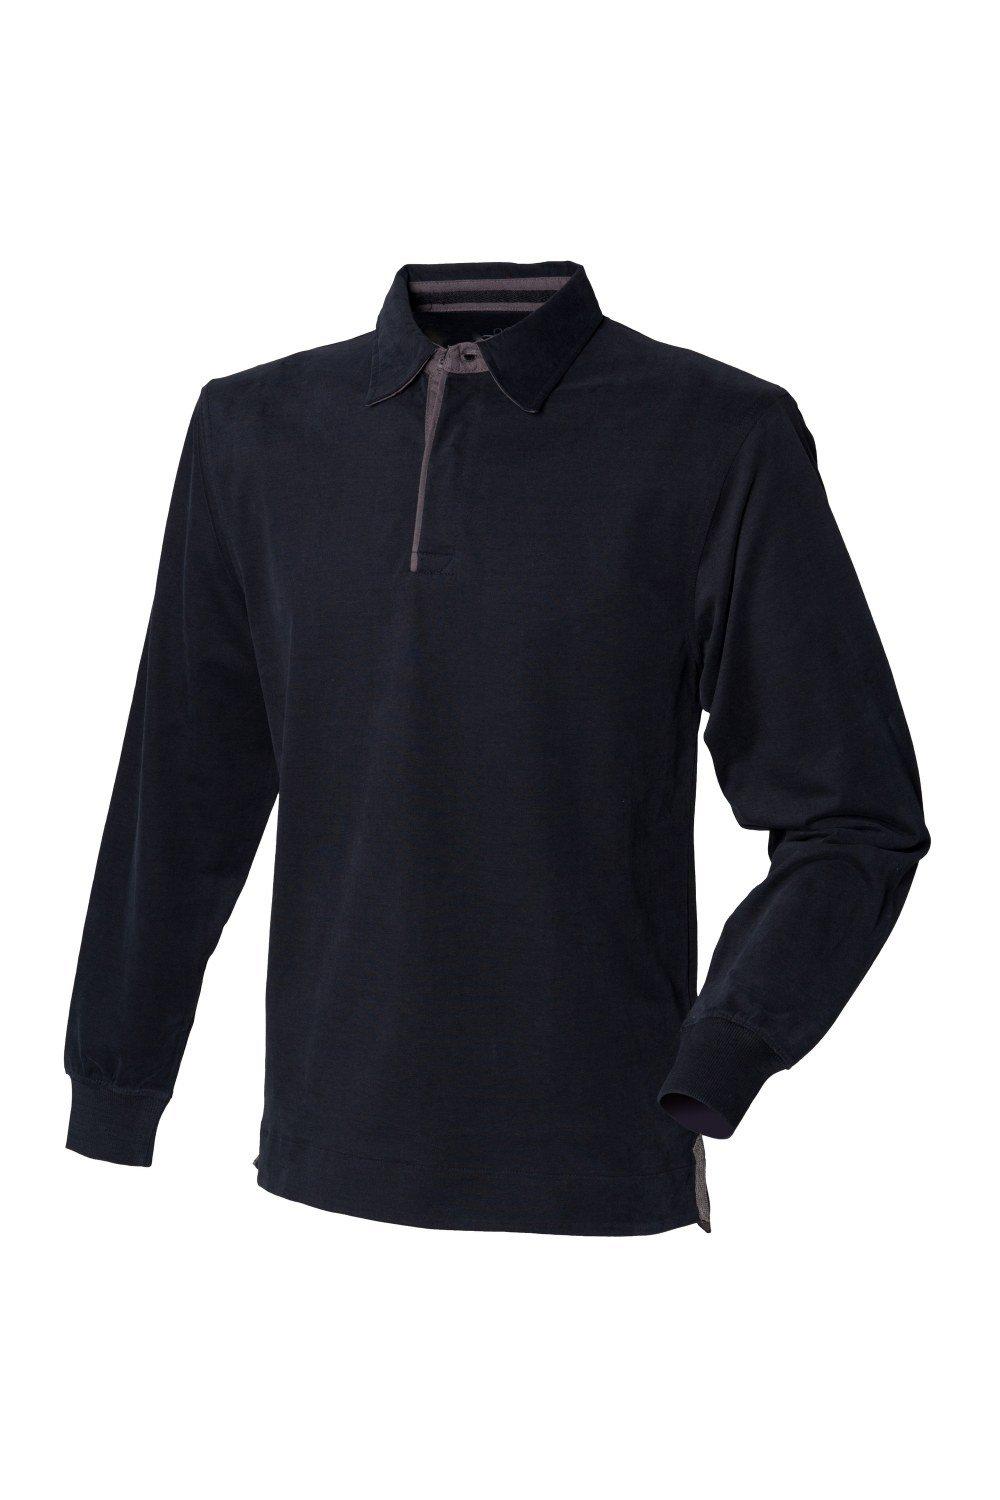 Супермягкая рубашка-поло для регби с длинными рукавами Front Row, черный front row shop pубашка